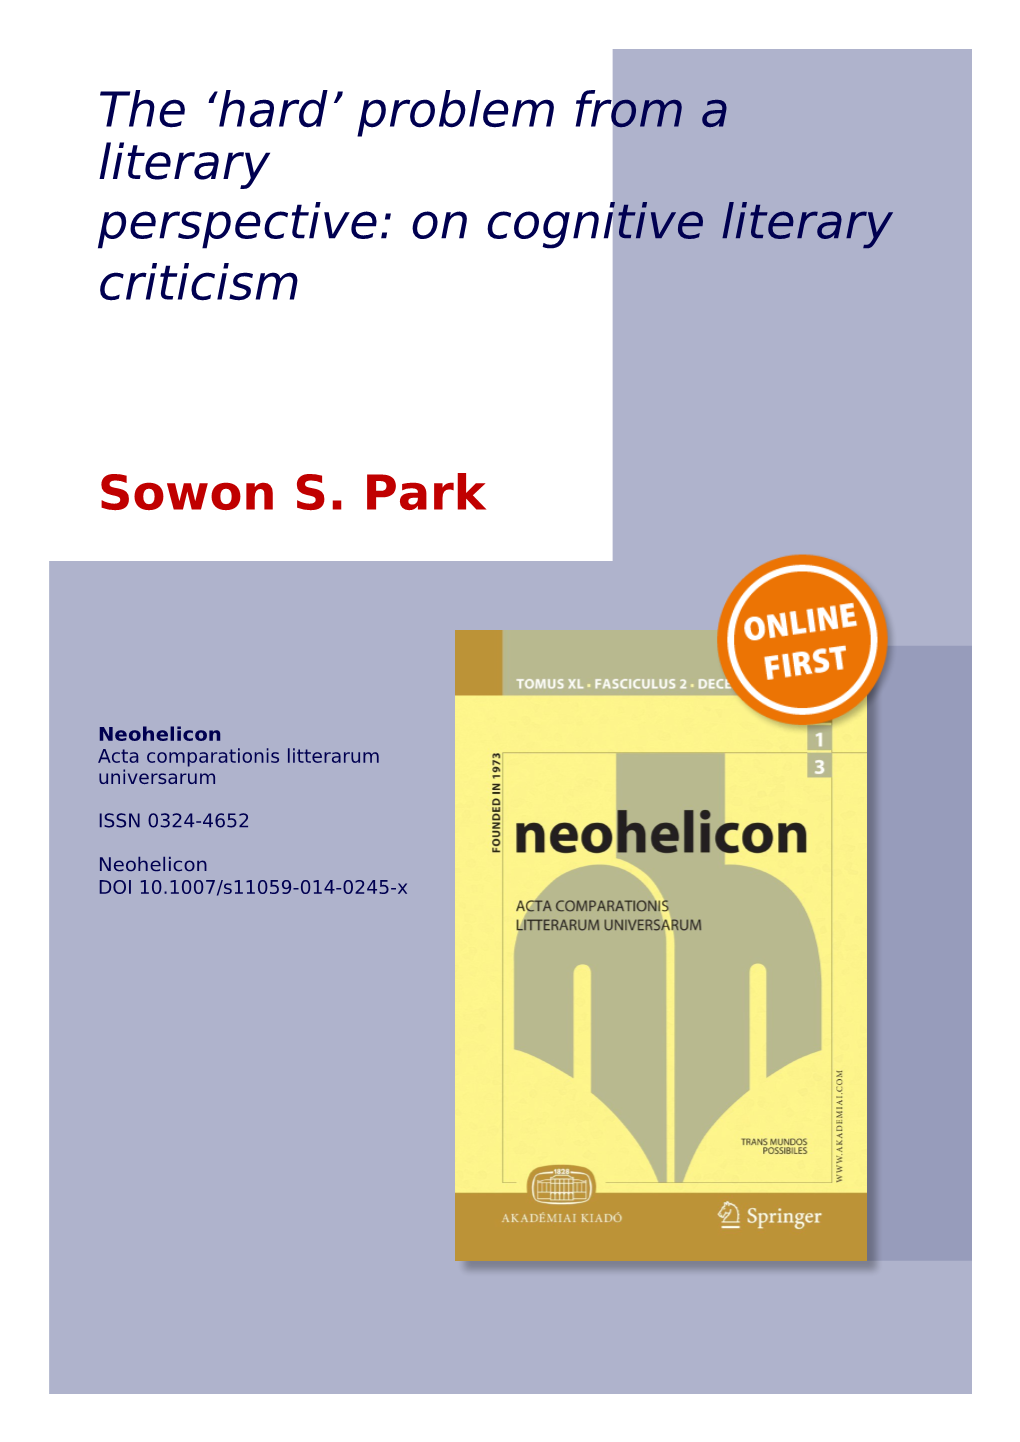 On Cognitive Literary Criticism Sowon S. Park